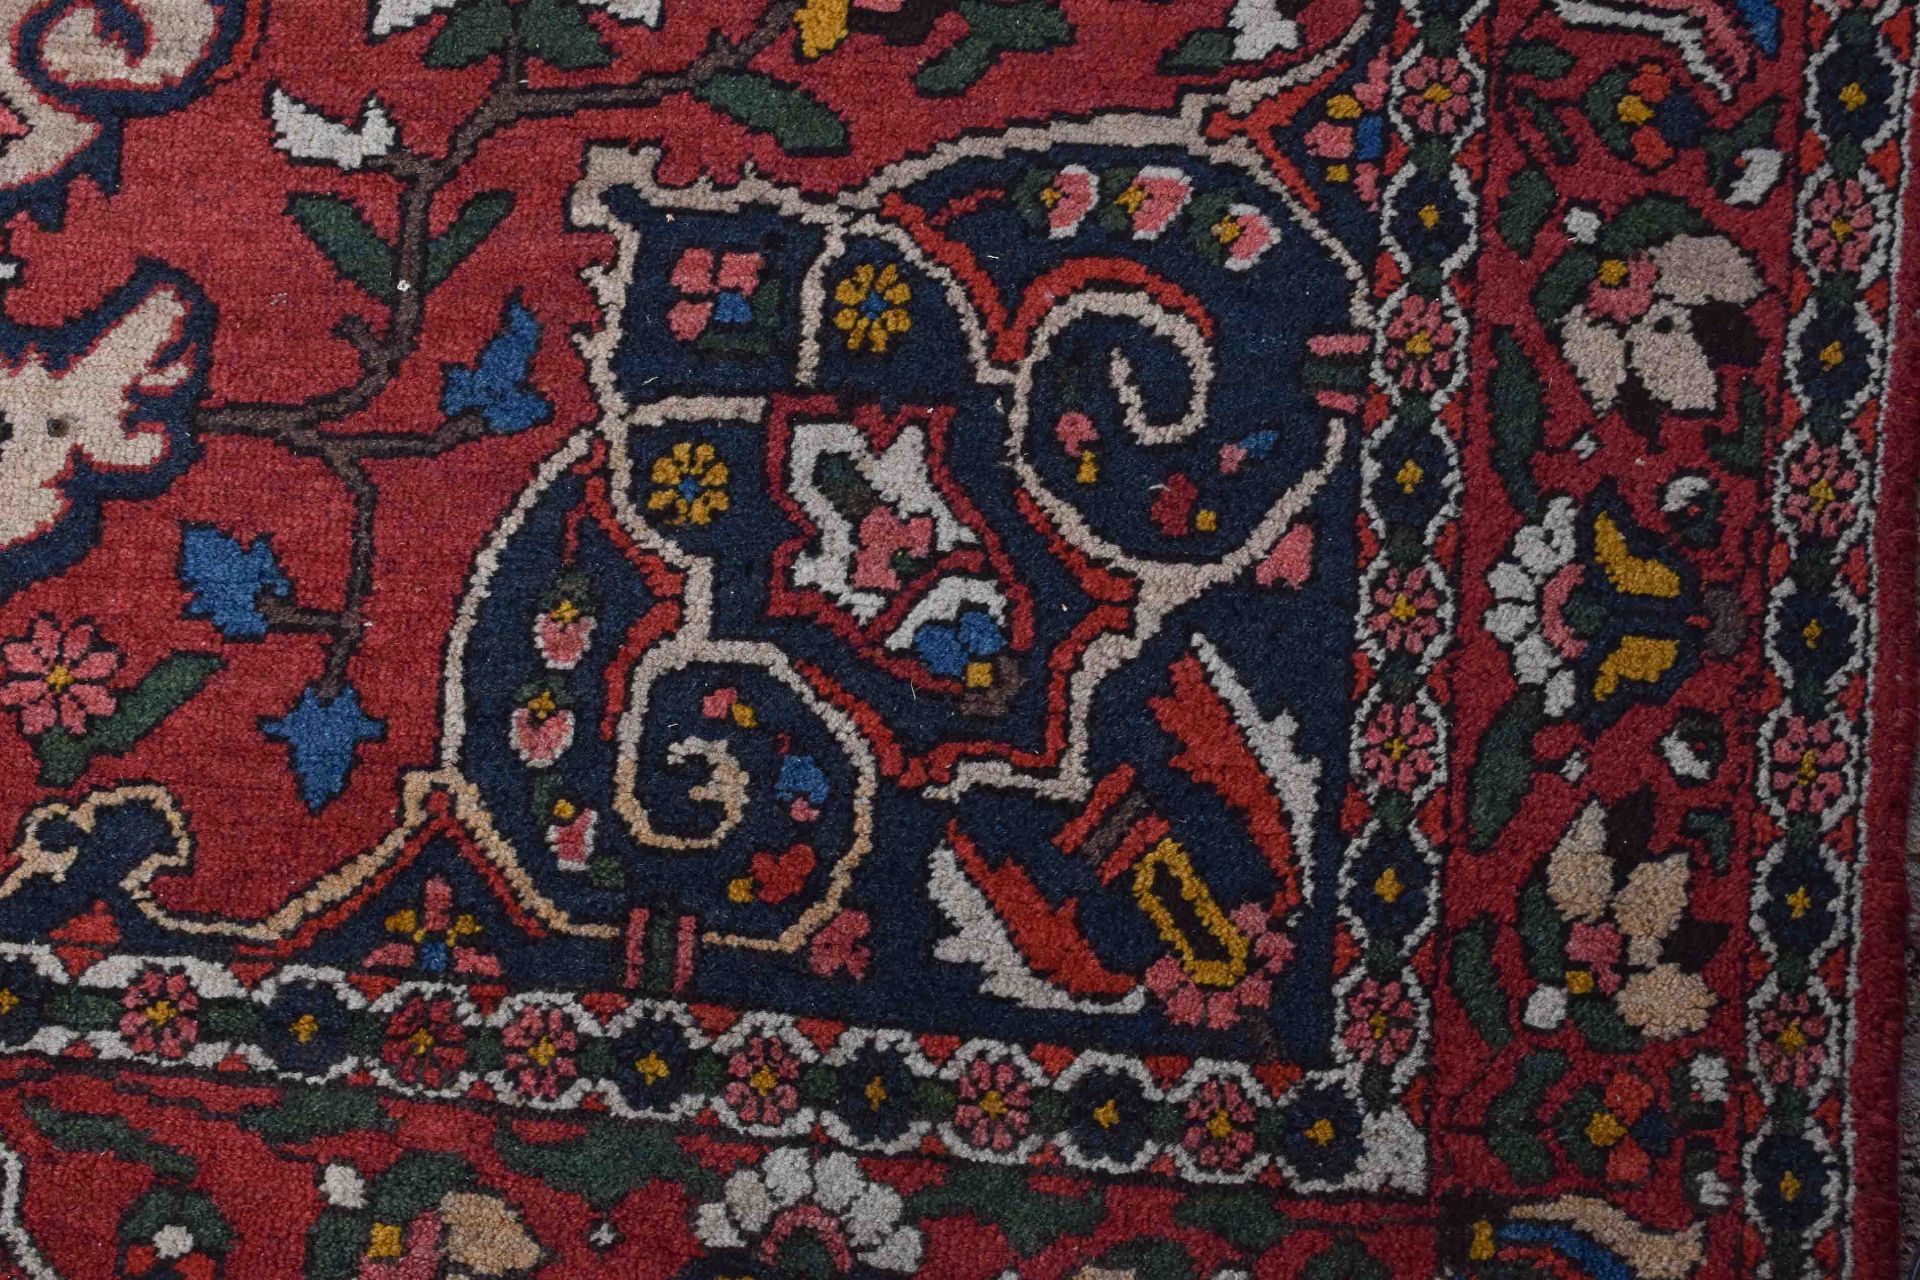 Alter Orientalischer Teppich214 cm x 141 cmOld oriental carpet214 cm x 141 cm - Bild 2 aus 3